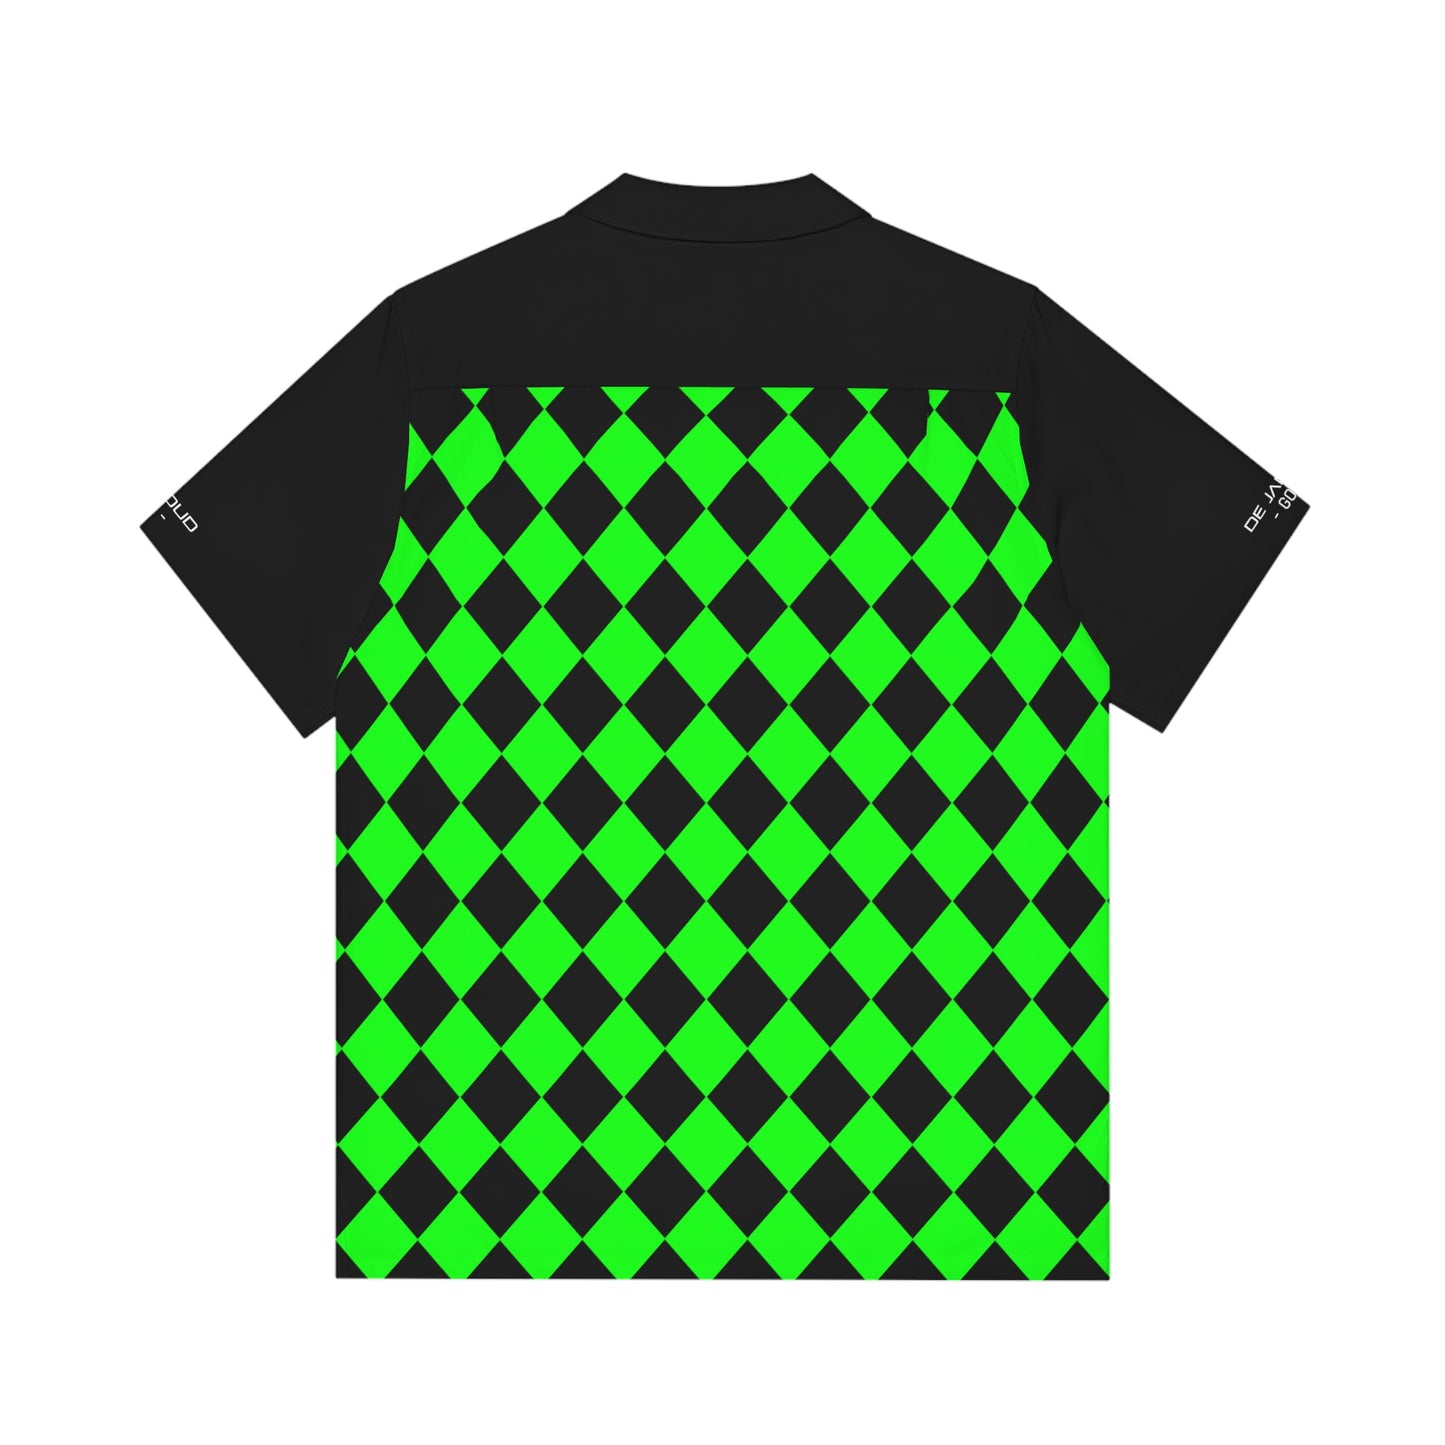 Classic Fairway Shirt / Hemd - Karo green/black